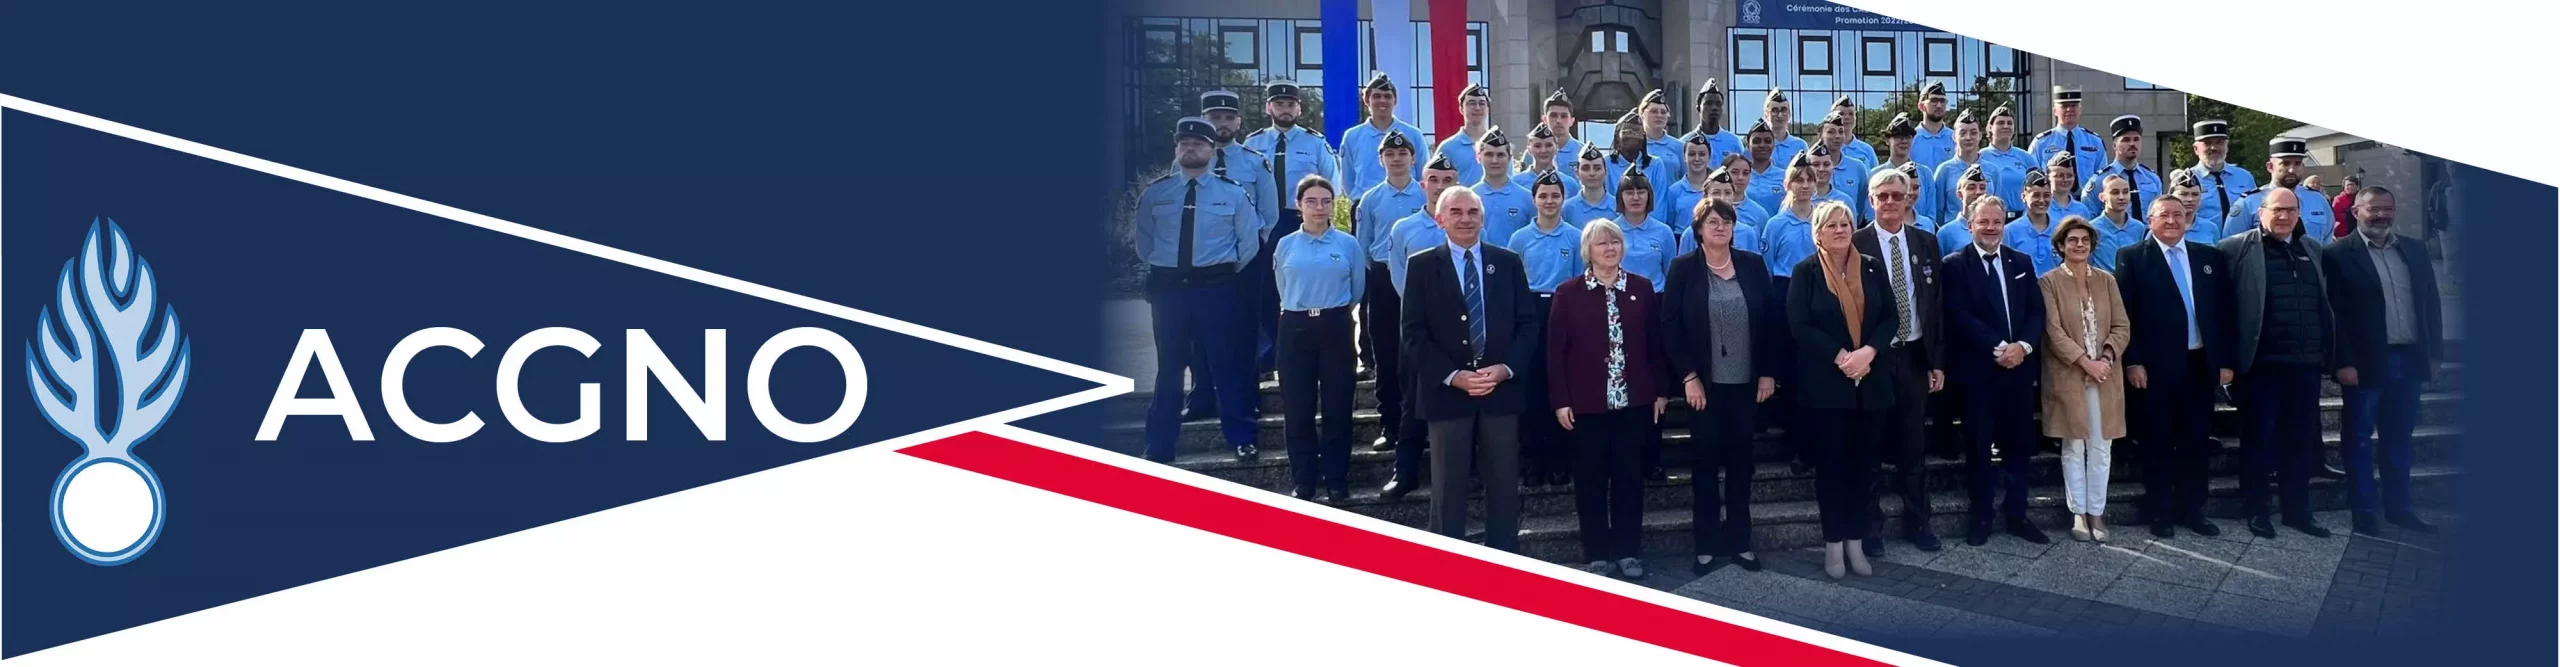 Bandeau ACGNO (Association des Cadets de la Gendarmerie Nationale de l'Oise